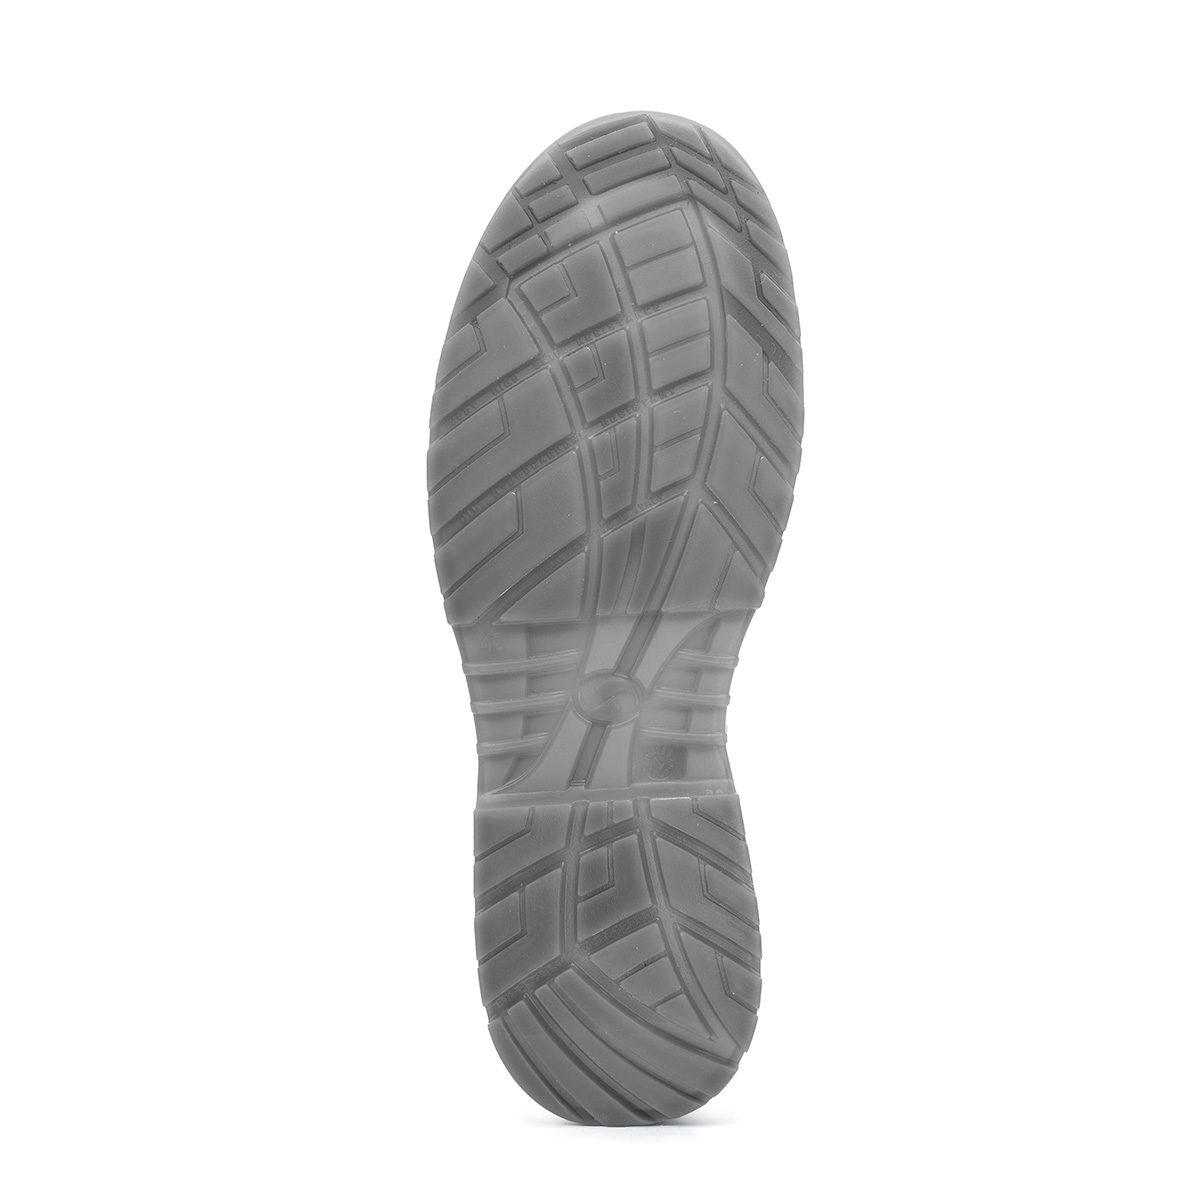 Crystal VENEZIA - Low Shoe con classe di protezione S2 *CI SRC - Codice  modello 86203-00 Sixton Peak Safety Shoes | Sicherheitsschuhe